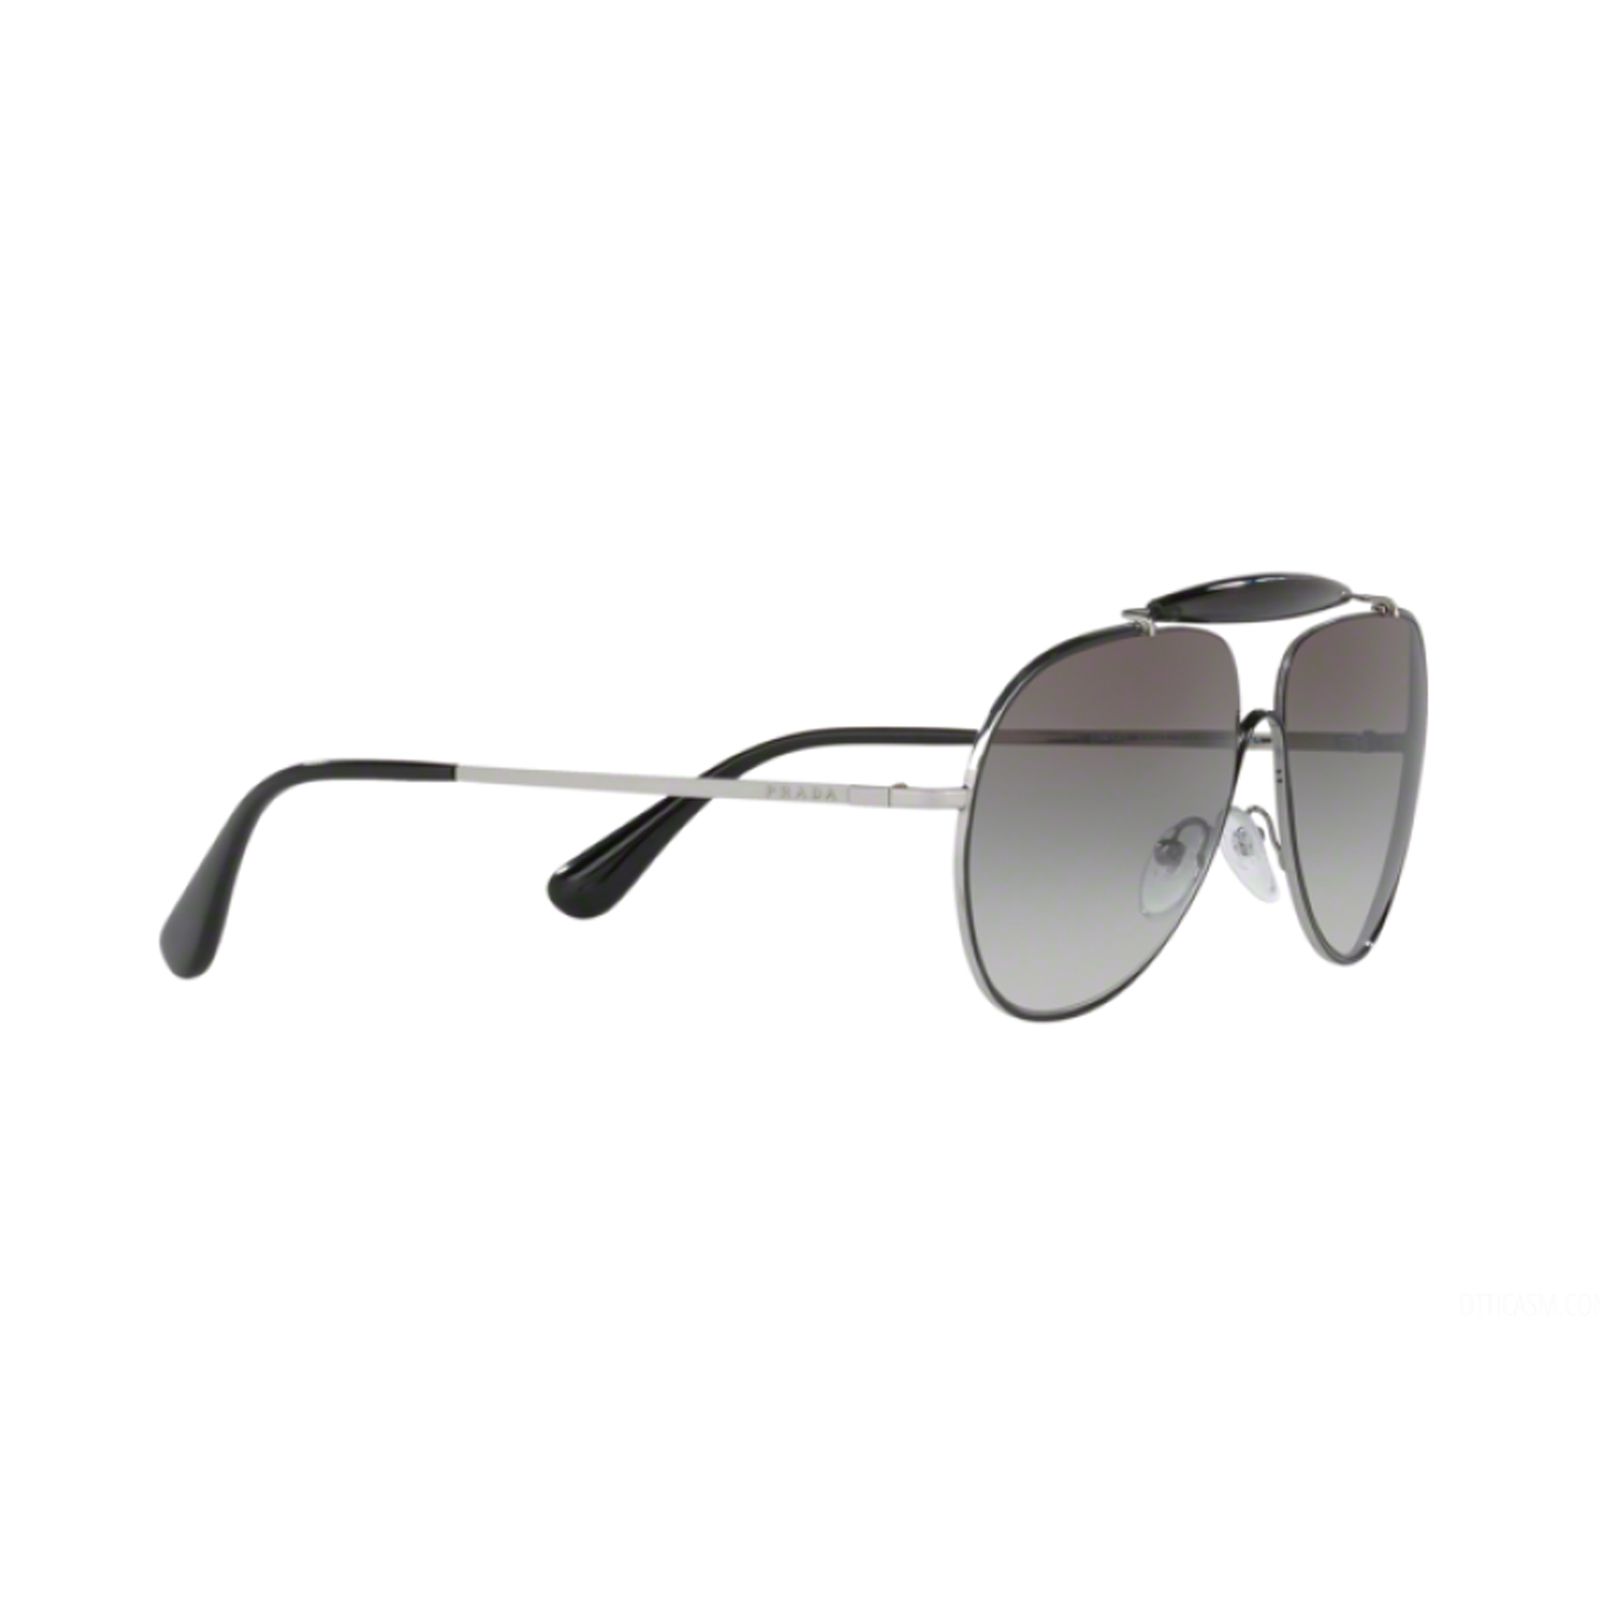 عینک آفتابی مردانه پرادا مدل PR 56ss 7ax5o0 -  - 3